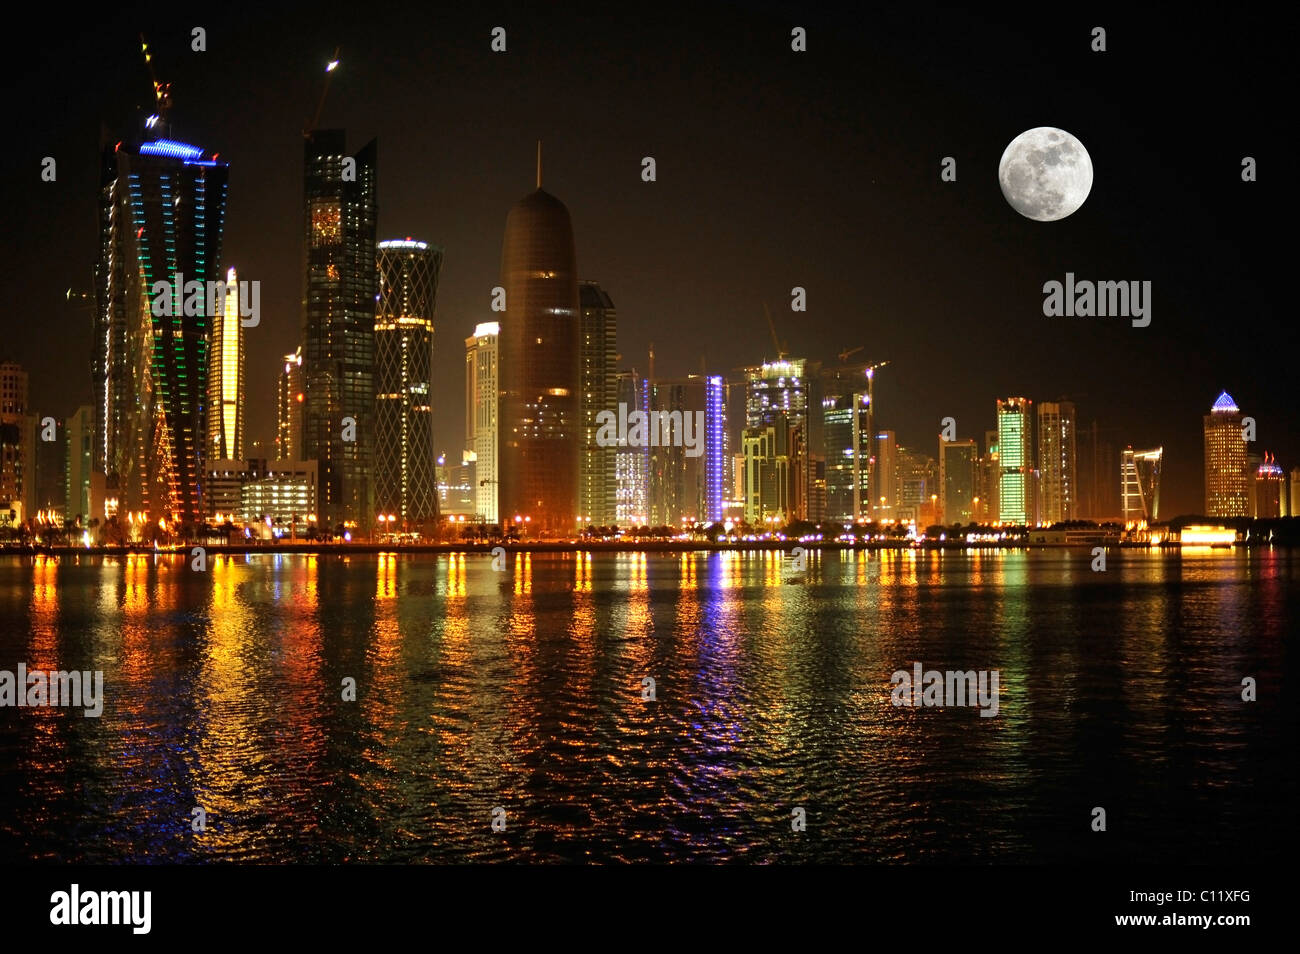 Nachtaufnahme, Skyline von Doha mit dem Tornado Tower, Peilturm, Frieden Towera, Al-Thani Turm und dem Mond, Doha, Katar Stockfoto